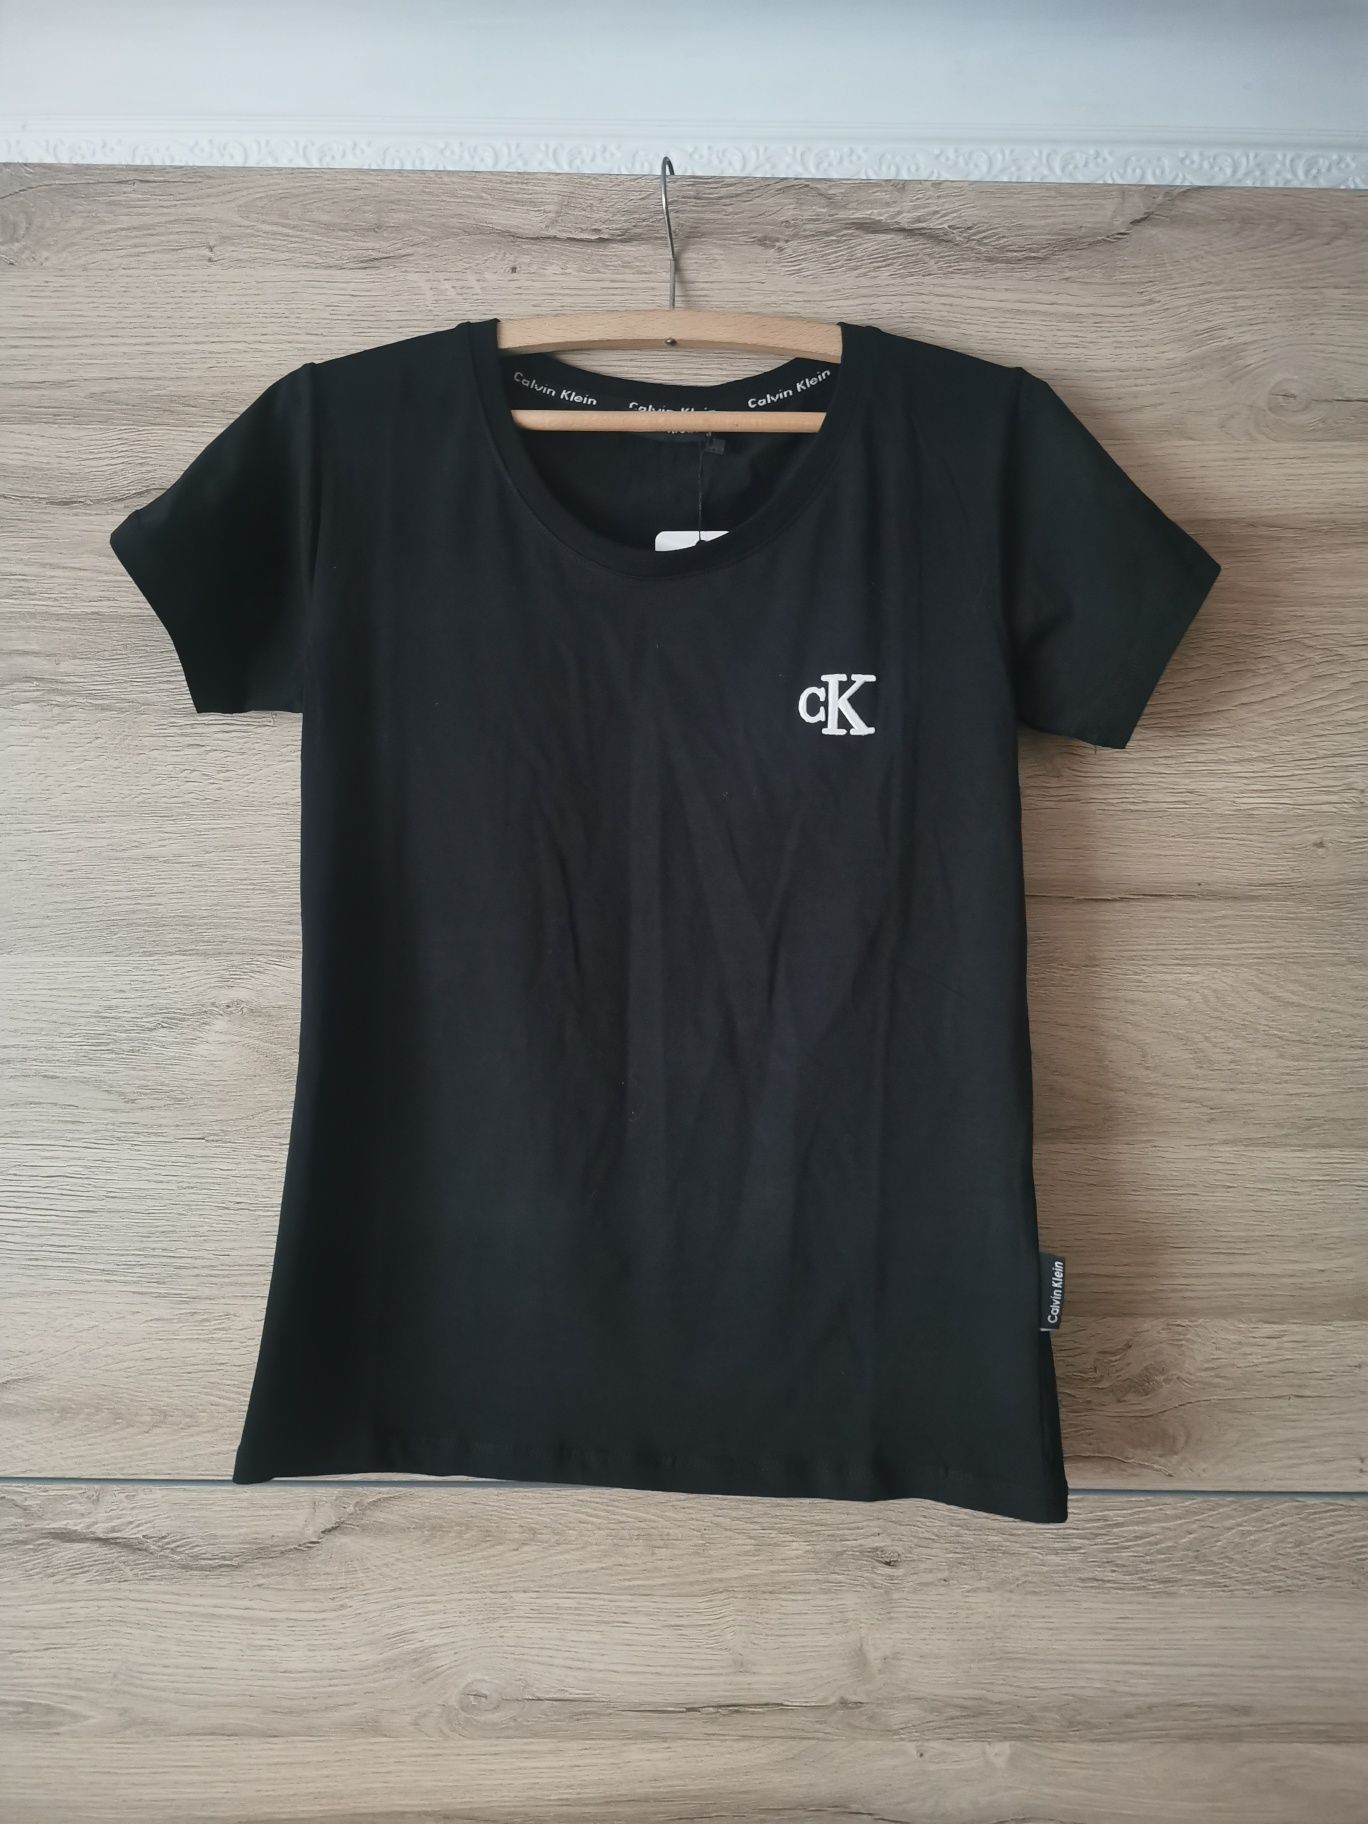 Nowa koszulka damska Calwin Klein w kolorze czarnym logo szyte i napis